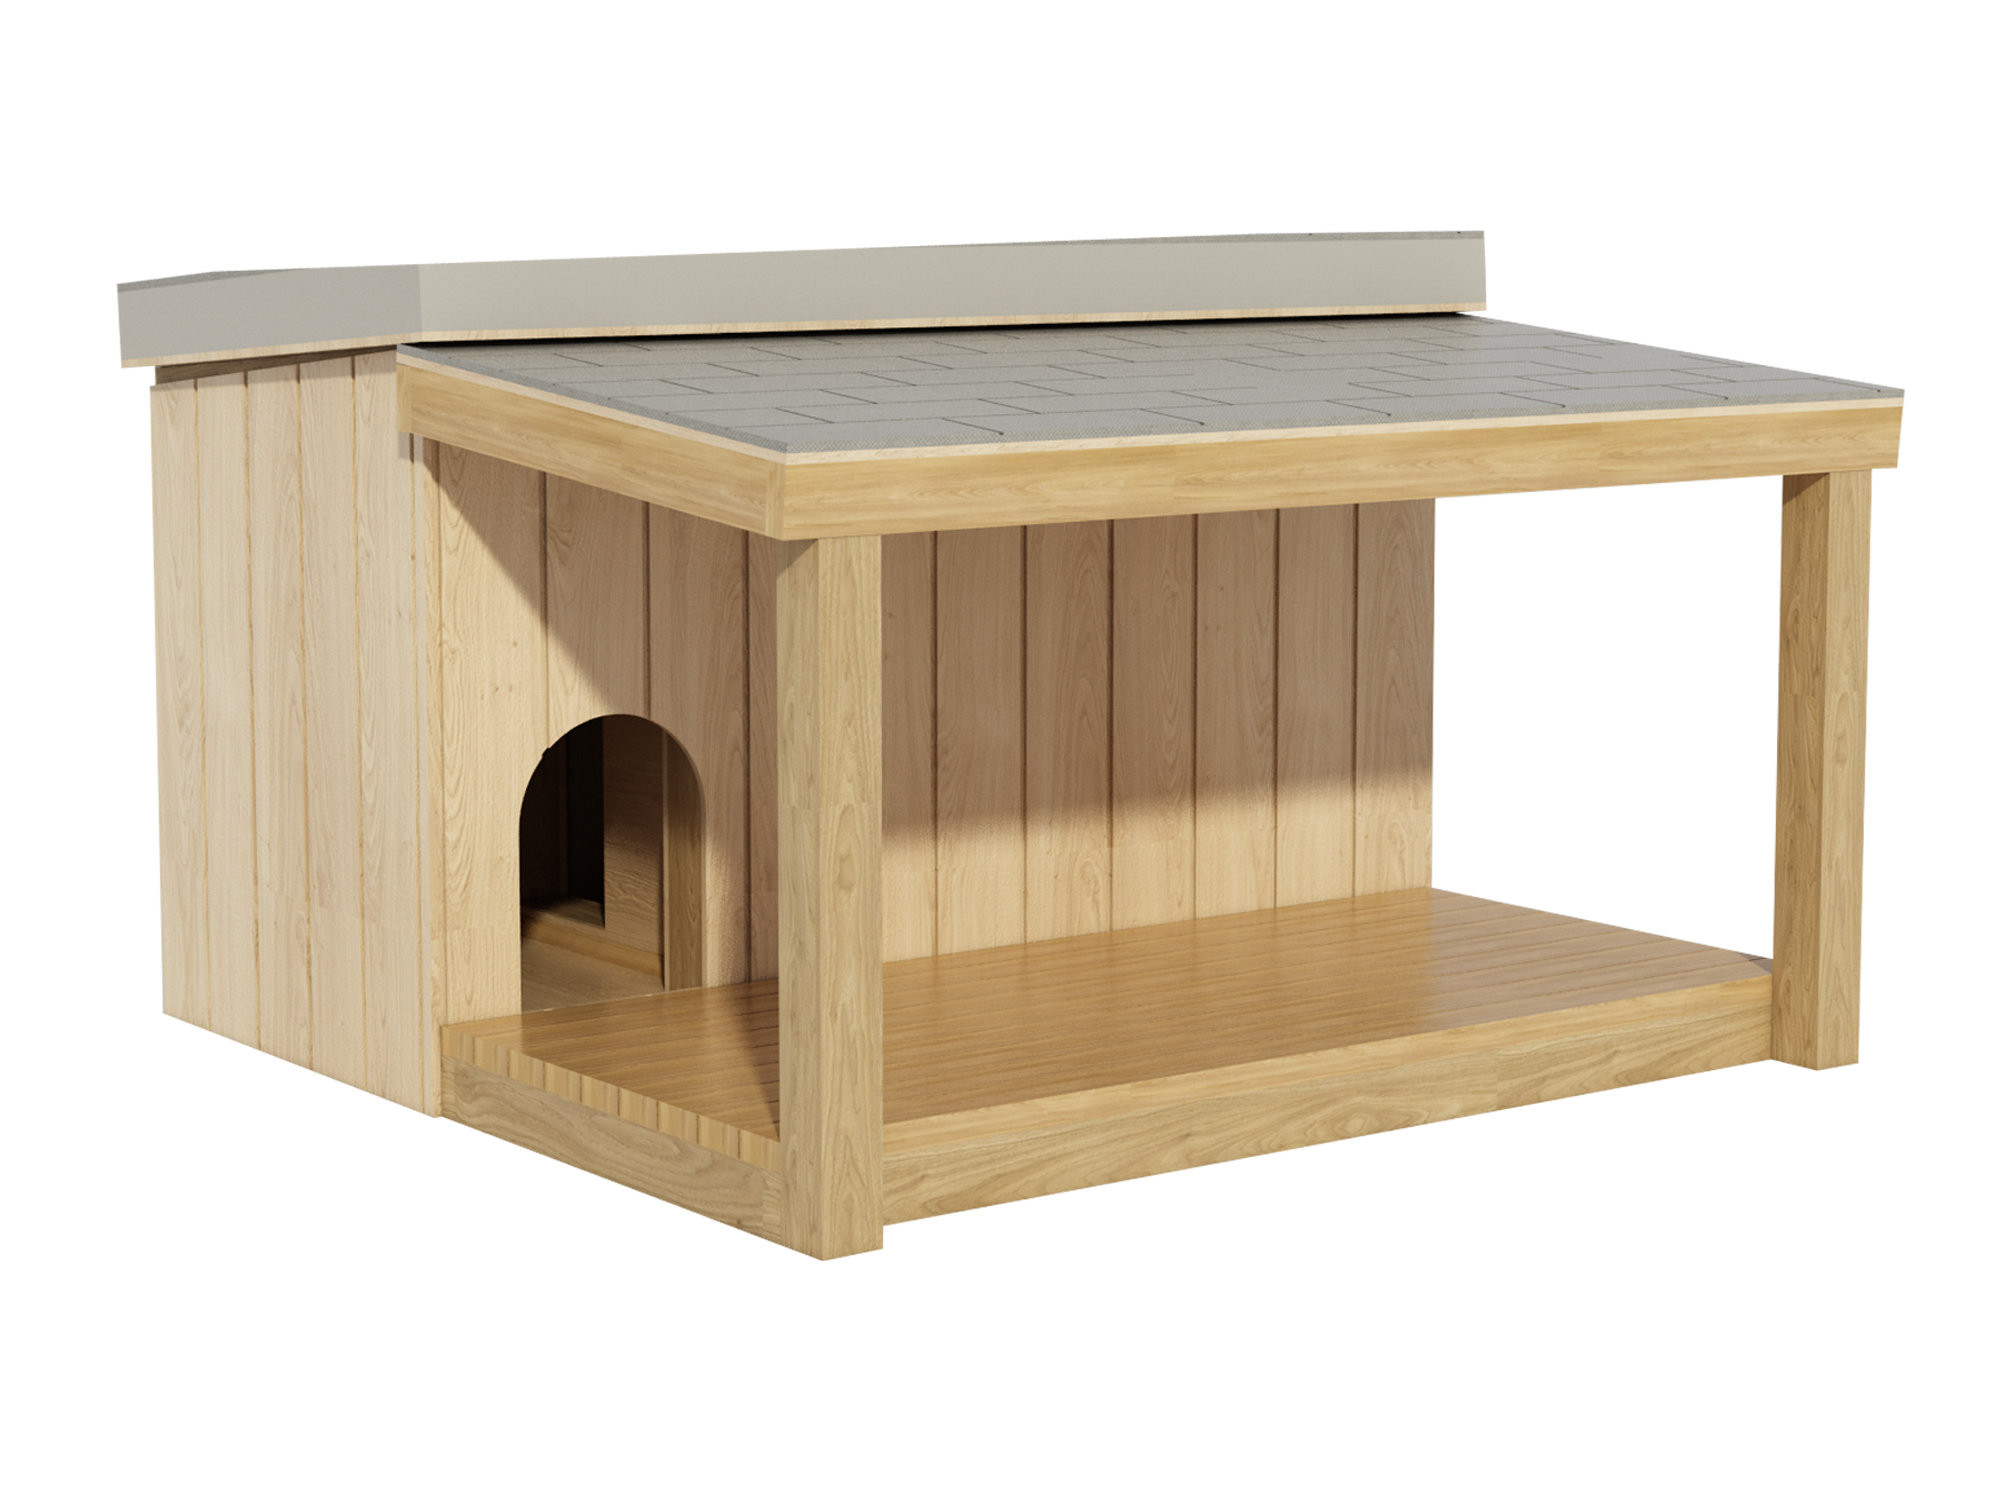 DIY Dog Kennels Plans
 Dog House Plans DIY Outdoor Wooden Pet Kennel